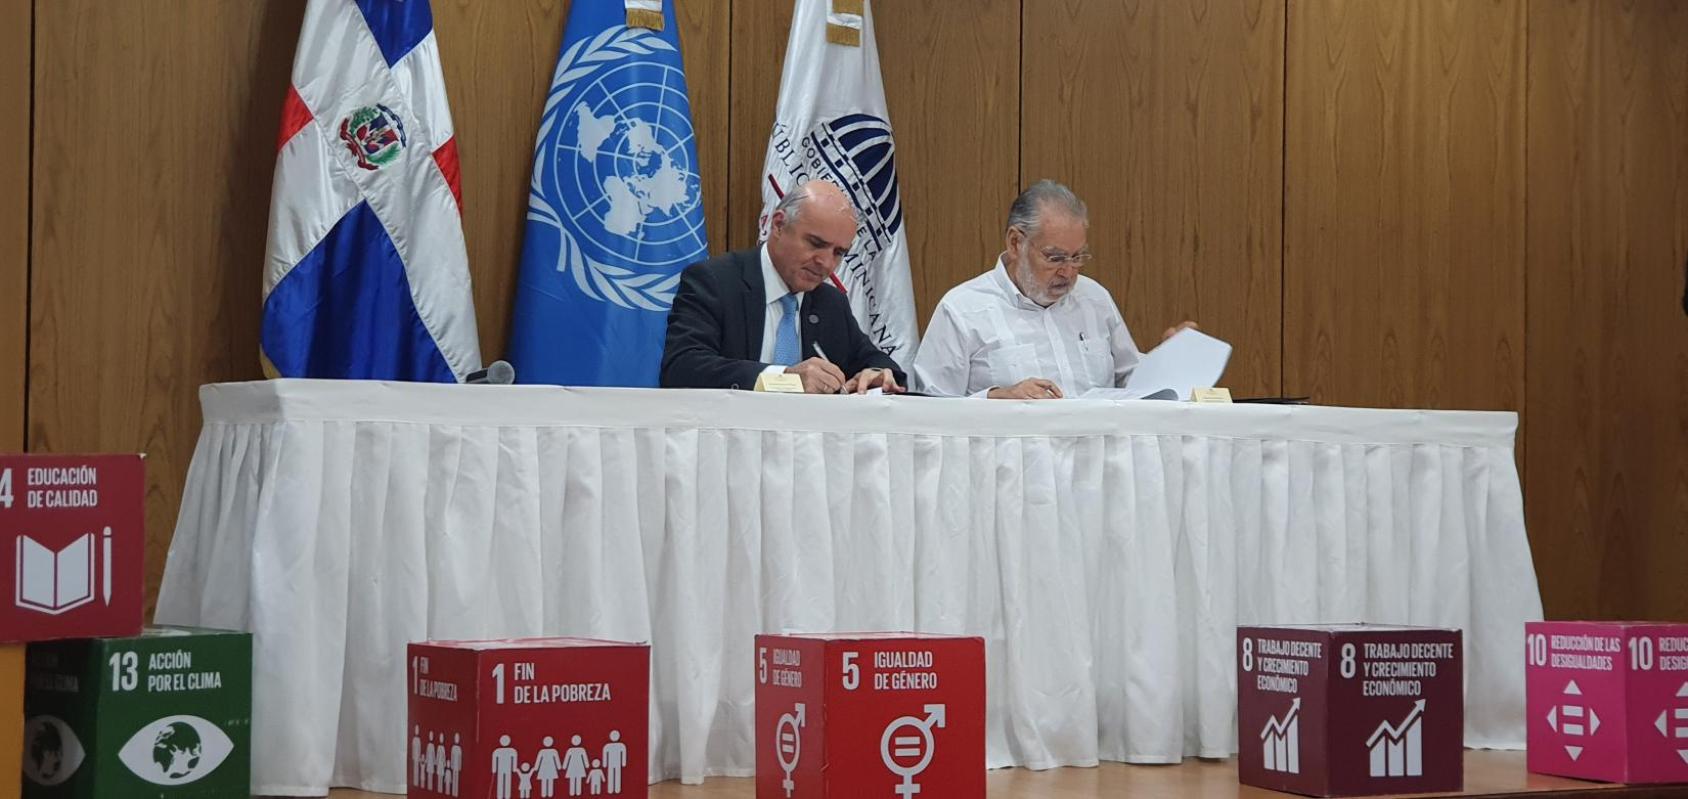 المنسق المقيم للأمم المتحدة في الجمهورية الدومينيكية موريسيو راميريز فيليجاس (إلى اليسار) مع وزير الاقتصاد والتخطيط والتنمية ميغيل سيارا هاتون (إلى اليمين) خلال توقيع اتفاقية التعاون الجديدة.